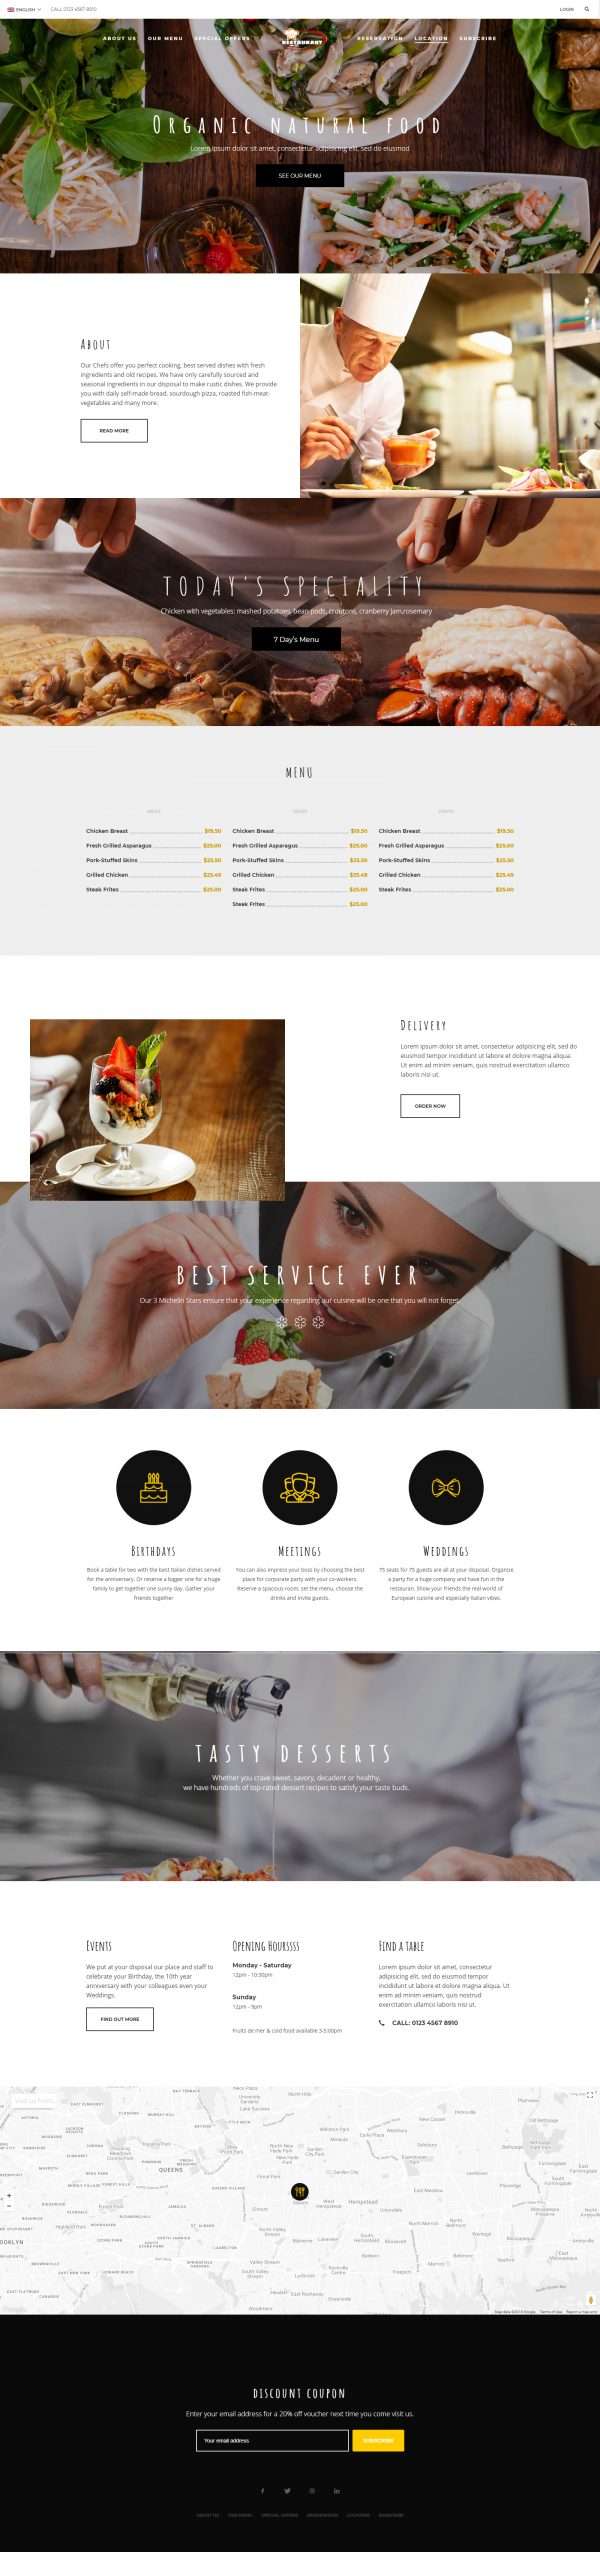 Restaurants website template